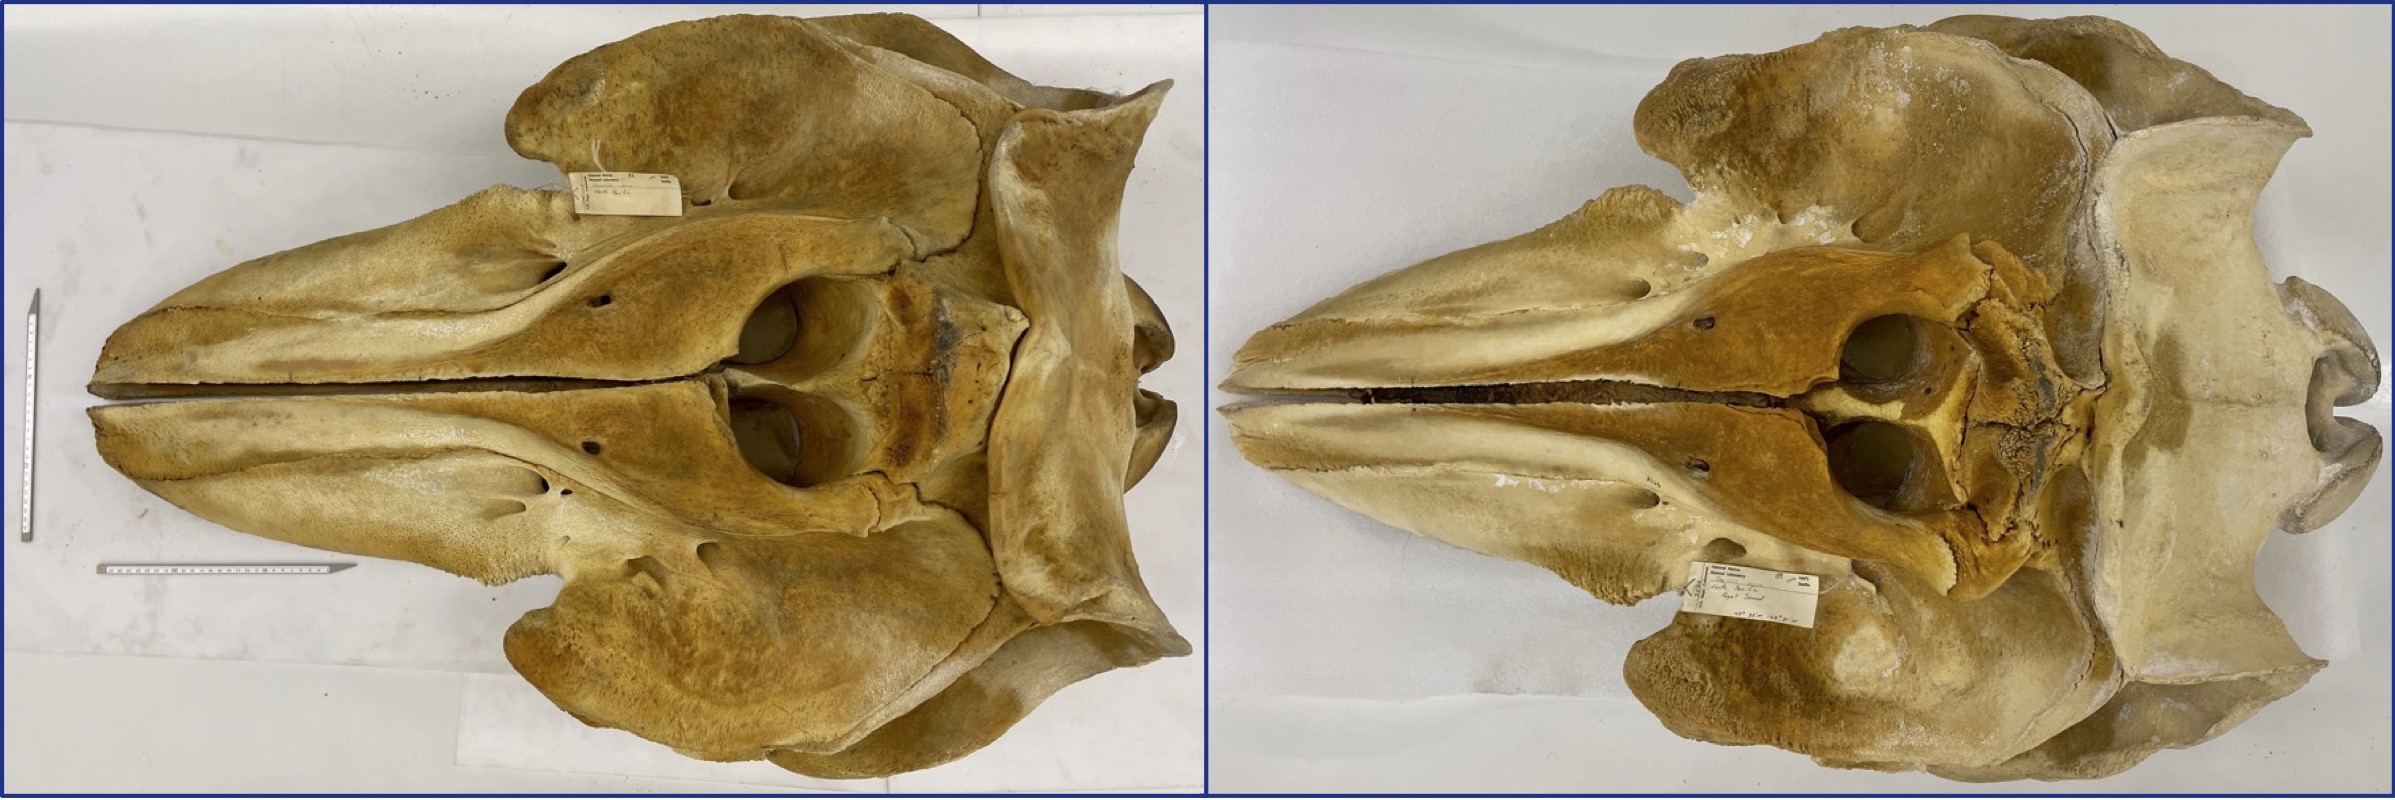 Superior view of Bigg's killer whale skull (left) and resident killer whale skull (right)